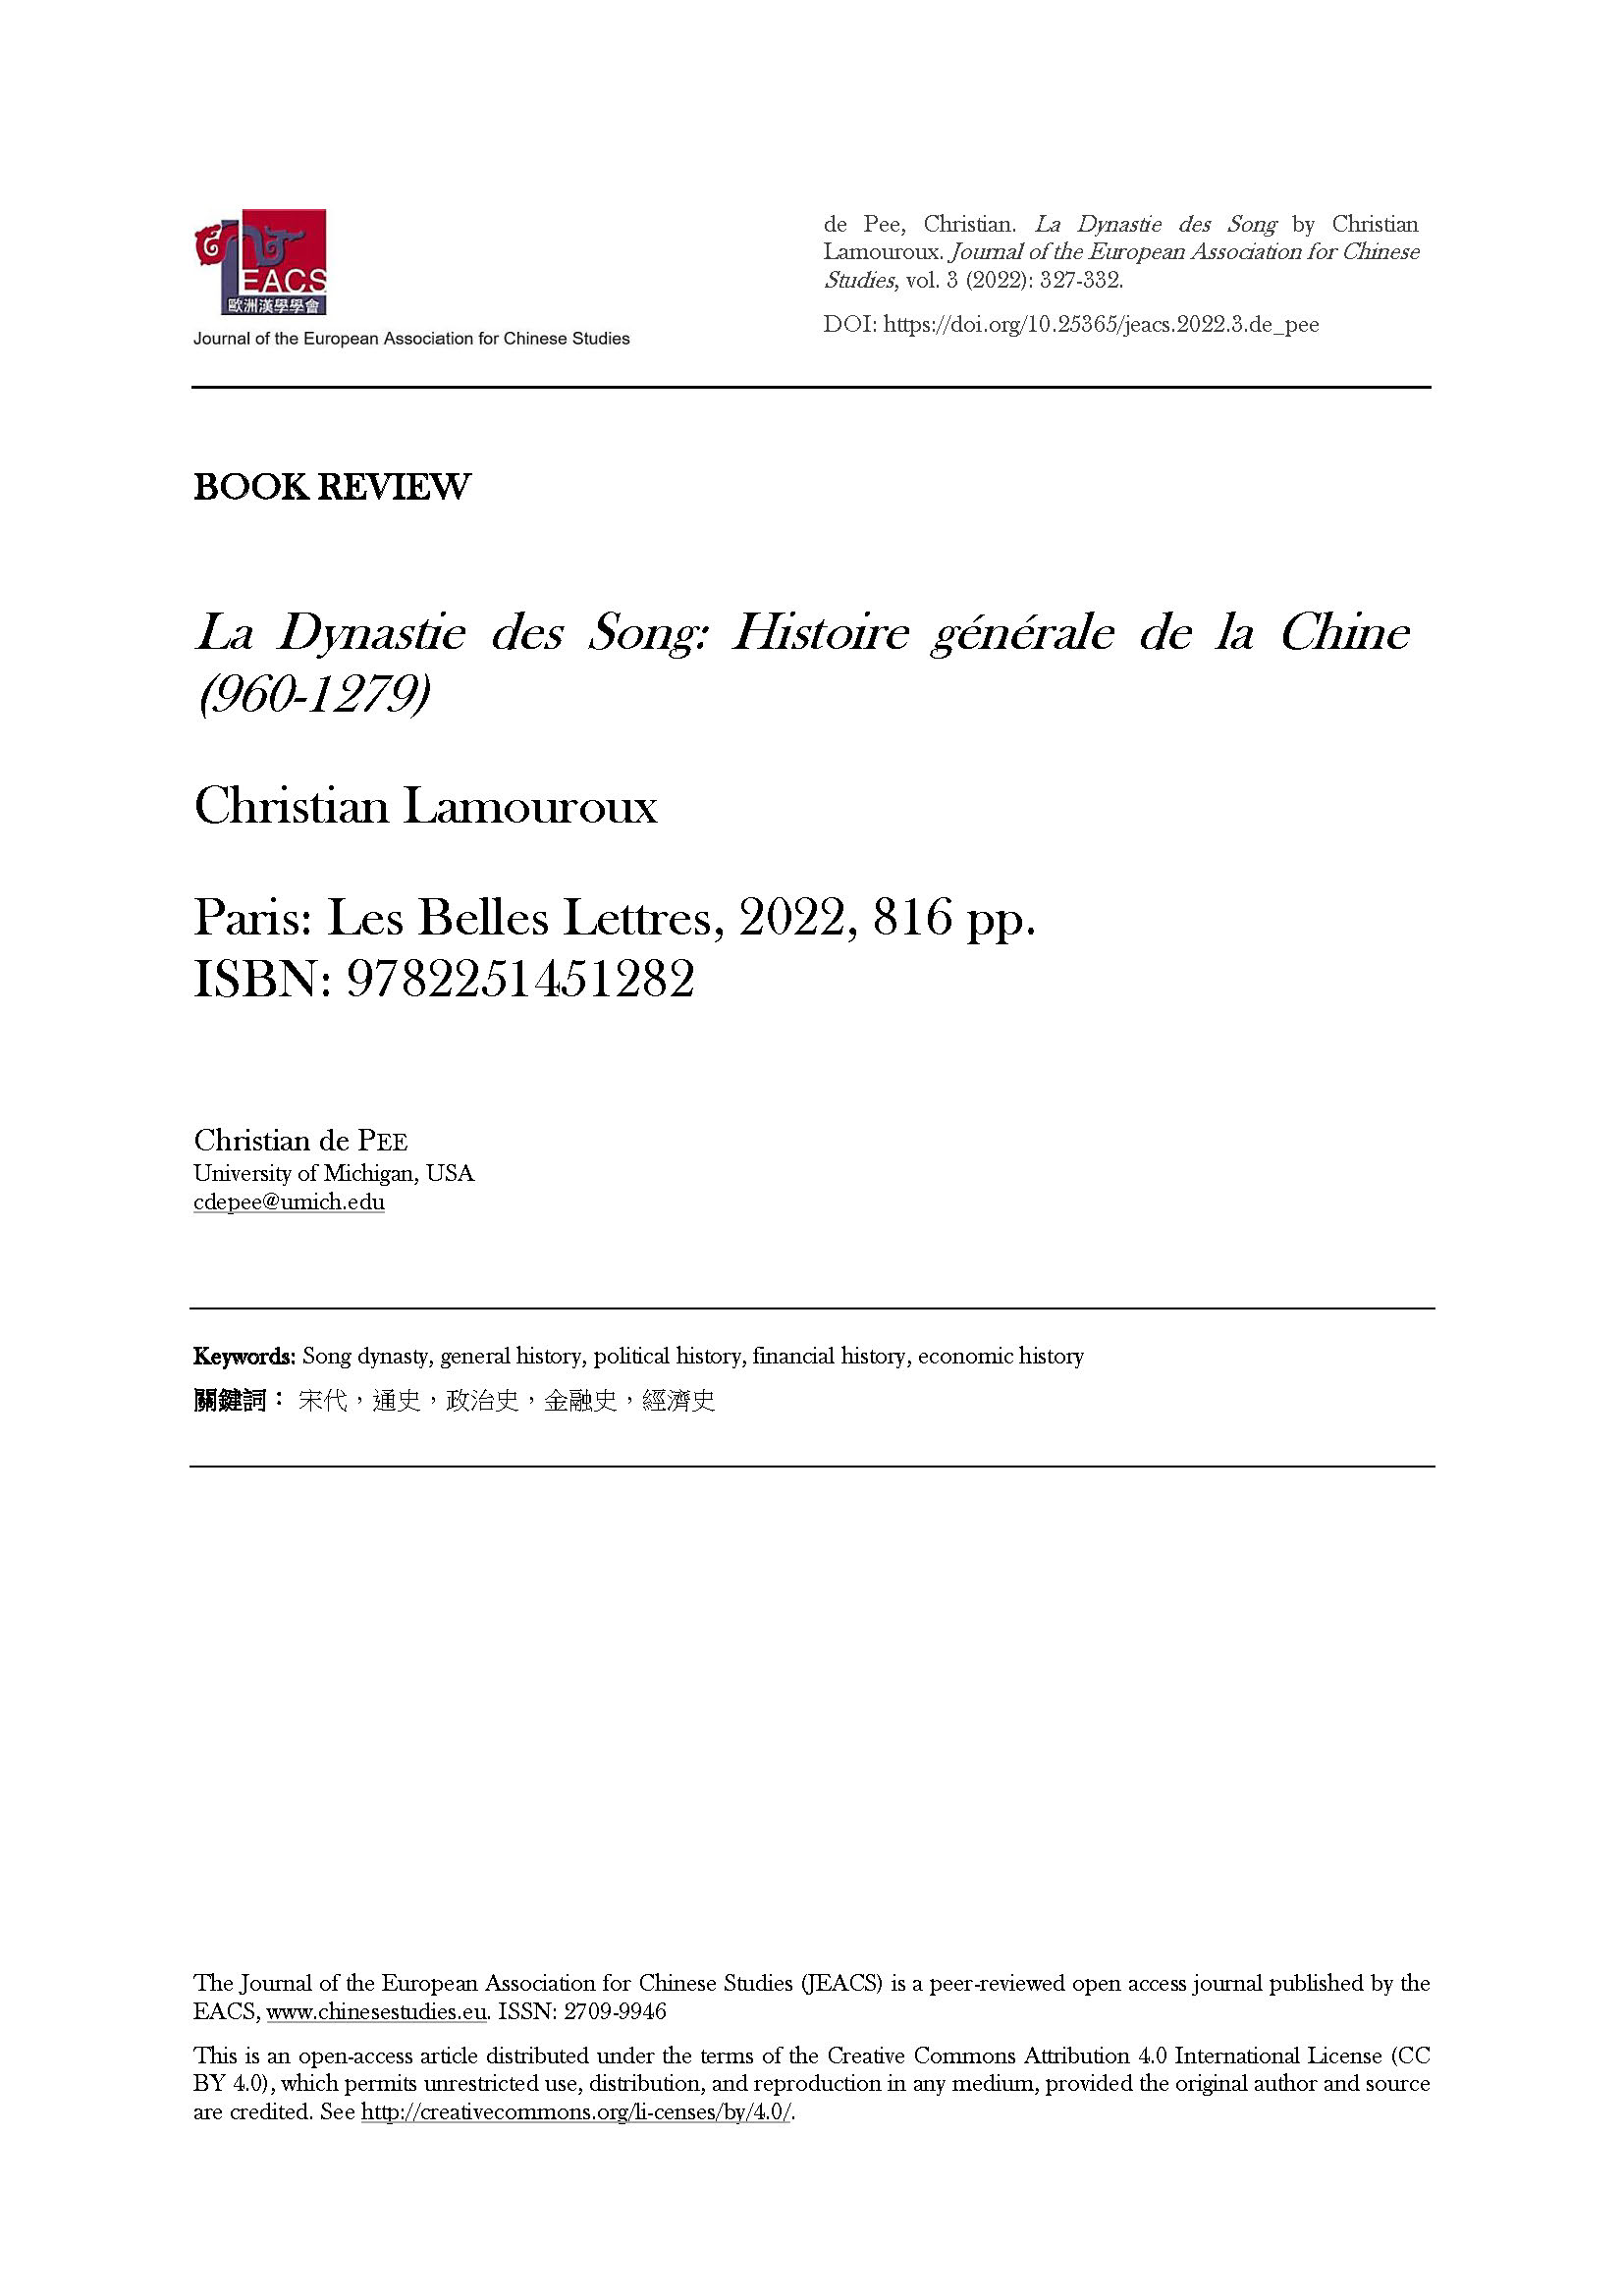 de Pee: La Dynastie des Song by Christian Lamouroux